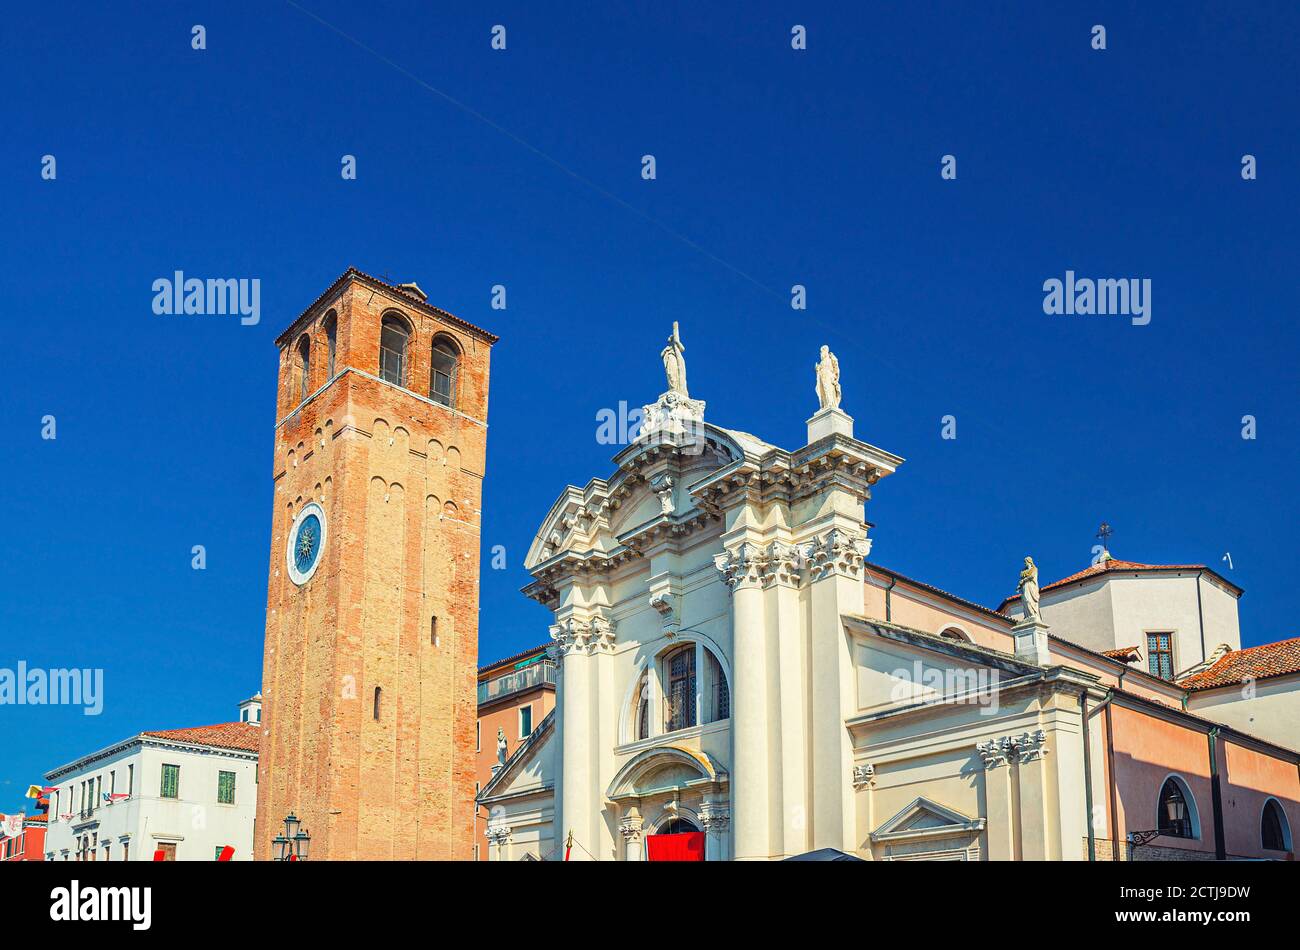 Chiesa di Sant'Andrea edificio cattolico con campanile in mattoni nel centro storico della città di Chioggia, cielo blu di fondo nella giornata estiva, Regione Veneto, Italia settentrionale Foto Stock